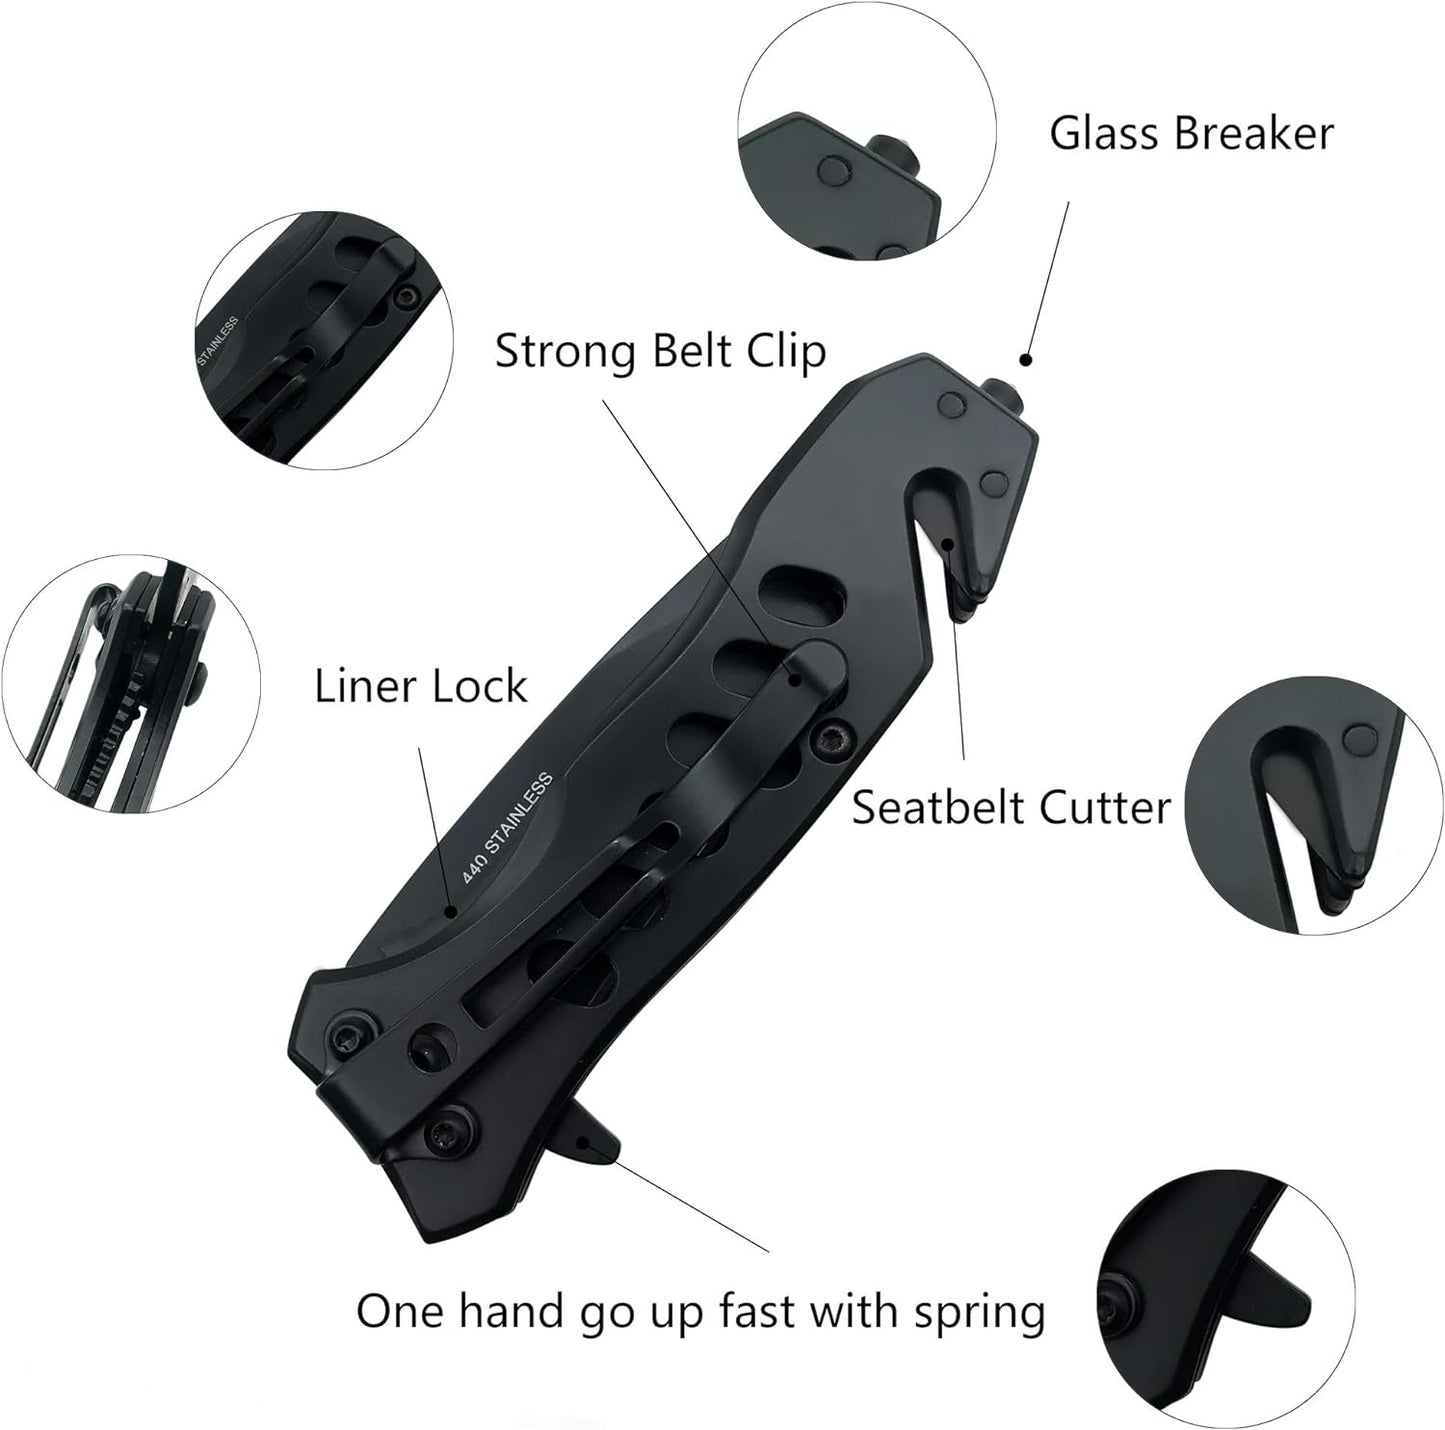 KD Pocket Knife with Liner Lock Pocket Clip Glass Breaker Seatbelt Cutter